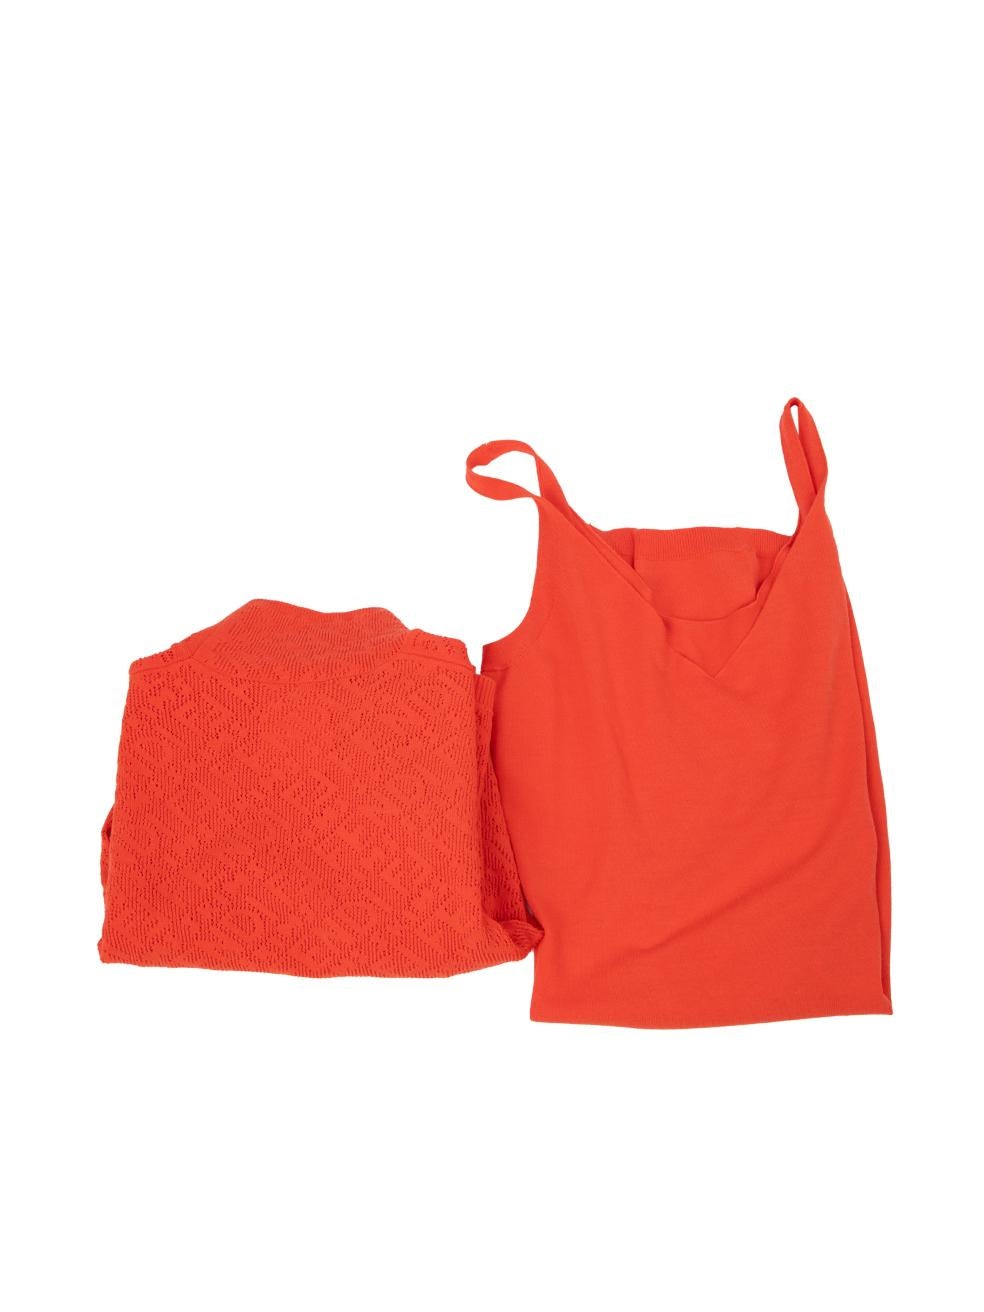 Fendi Fendi x Skims Red Mesh Logo Knit Dress Size M en vente 1